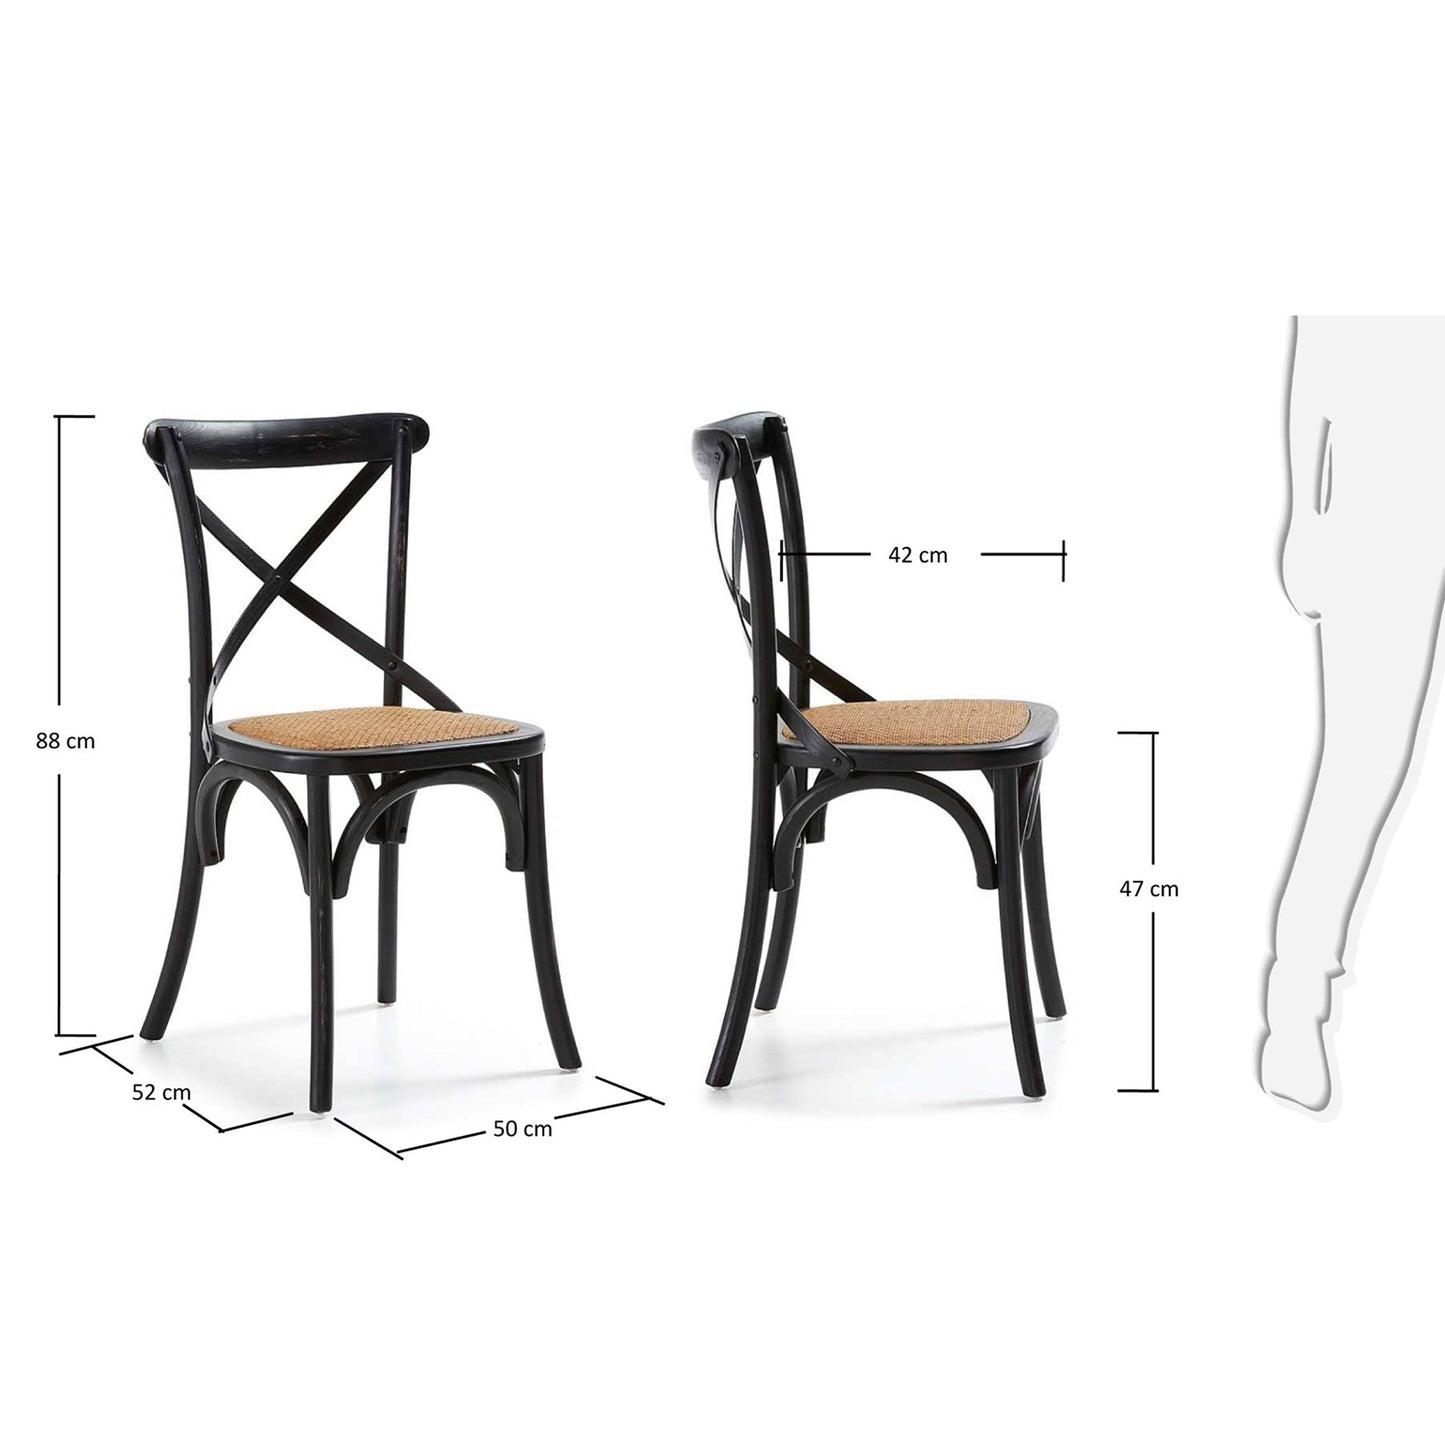 Silea Dining Chair (2pk)